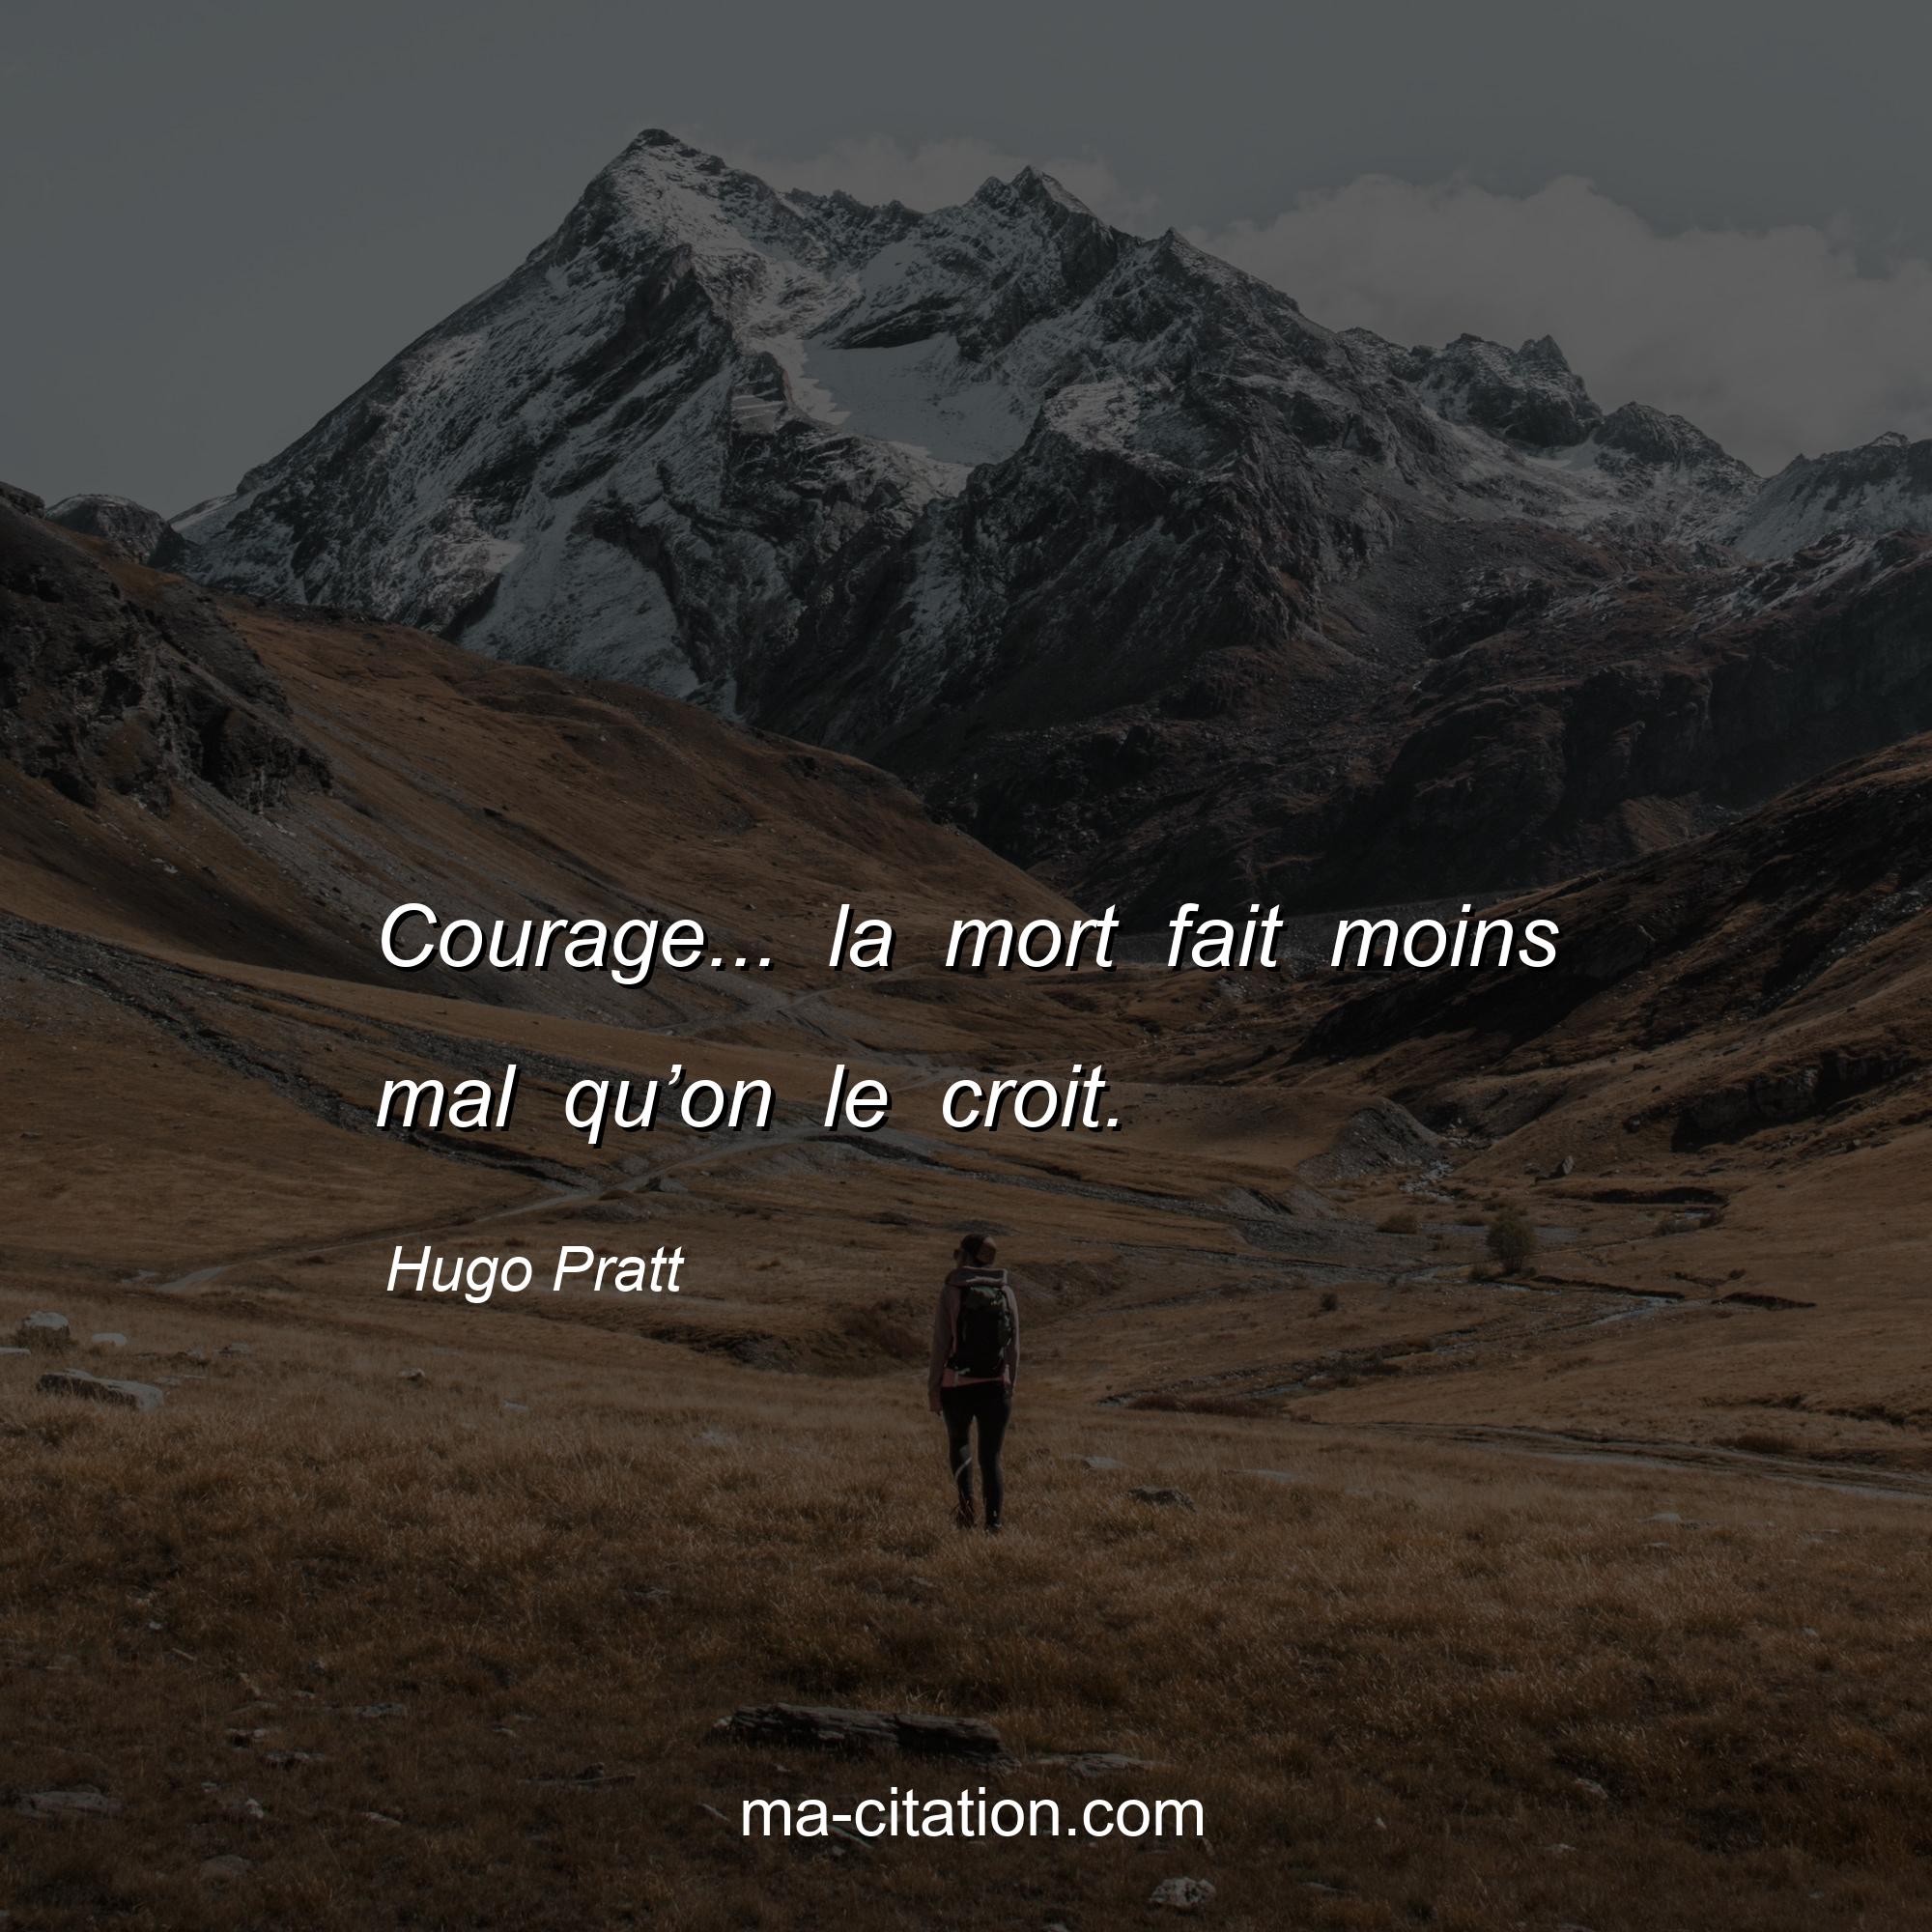 Hugo Pratt : Courage... la mort fait moins mal qu’on le croit.